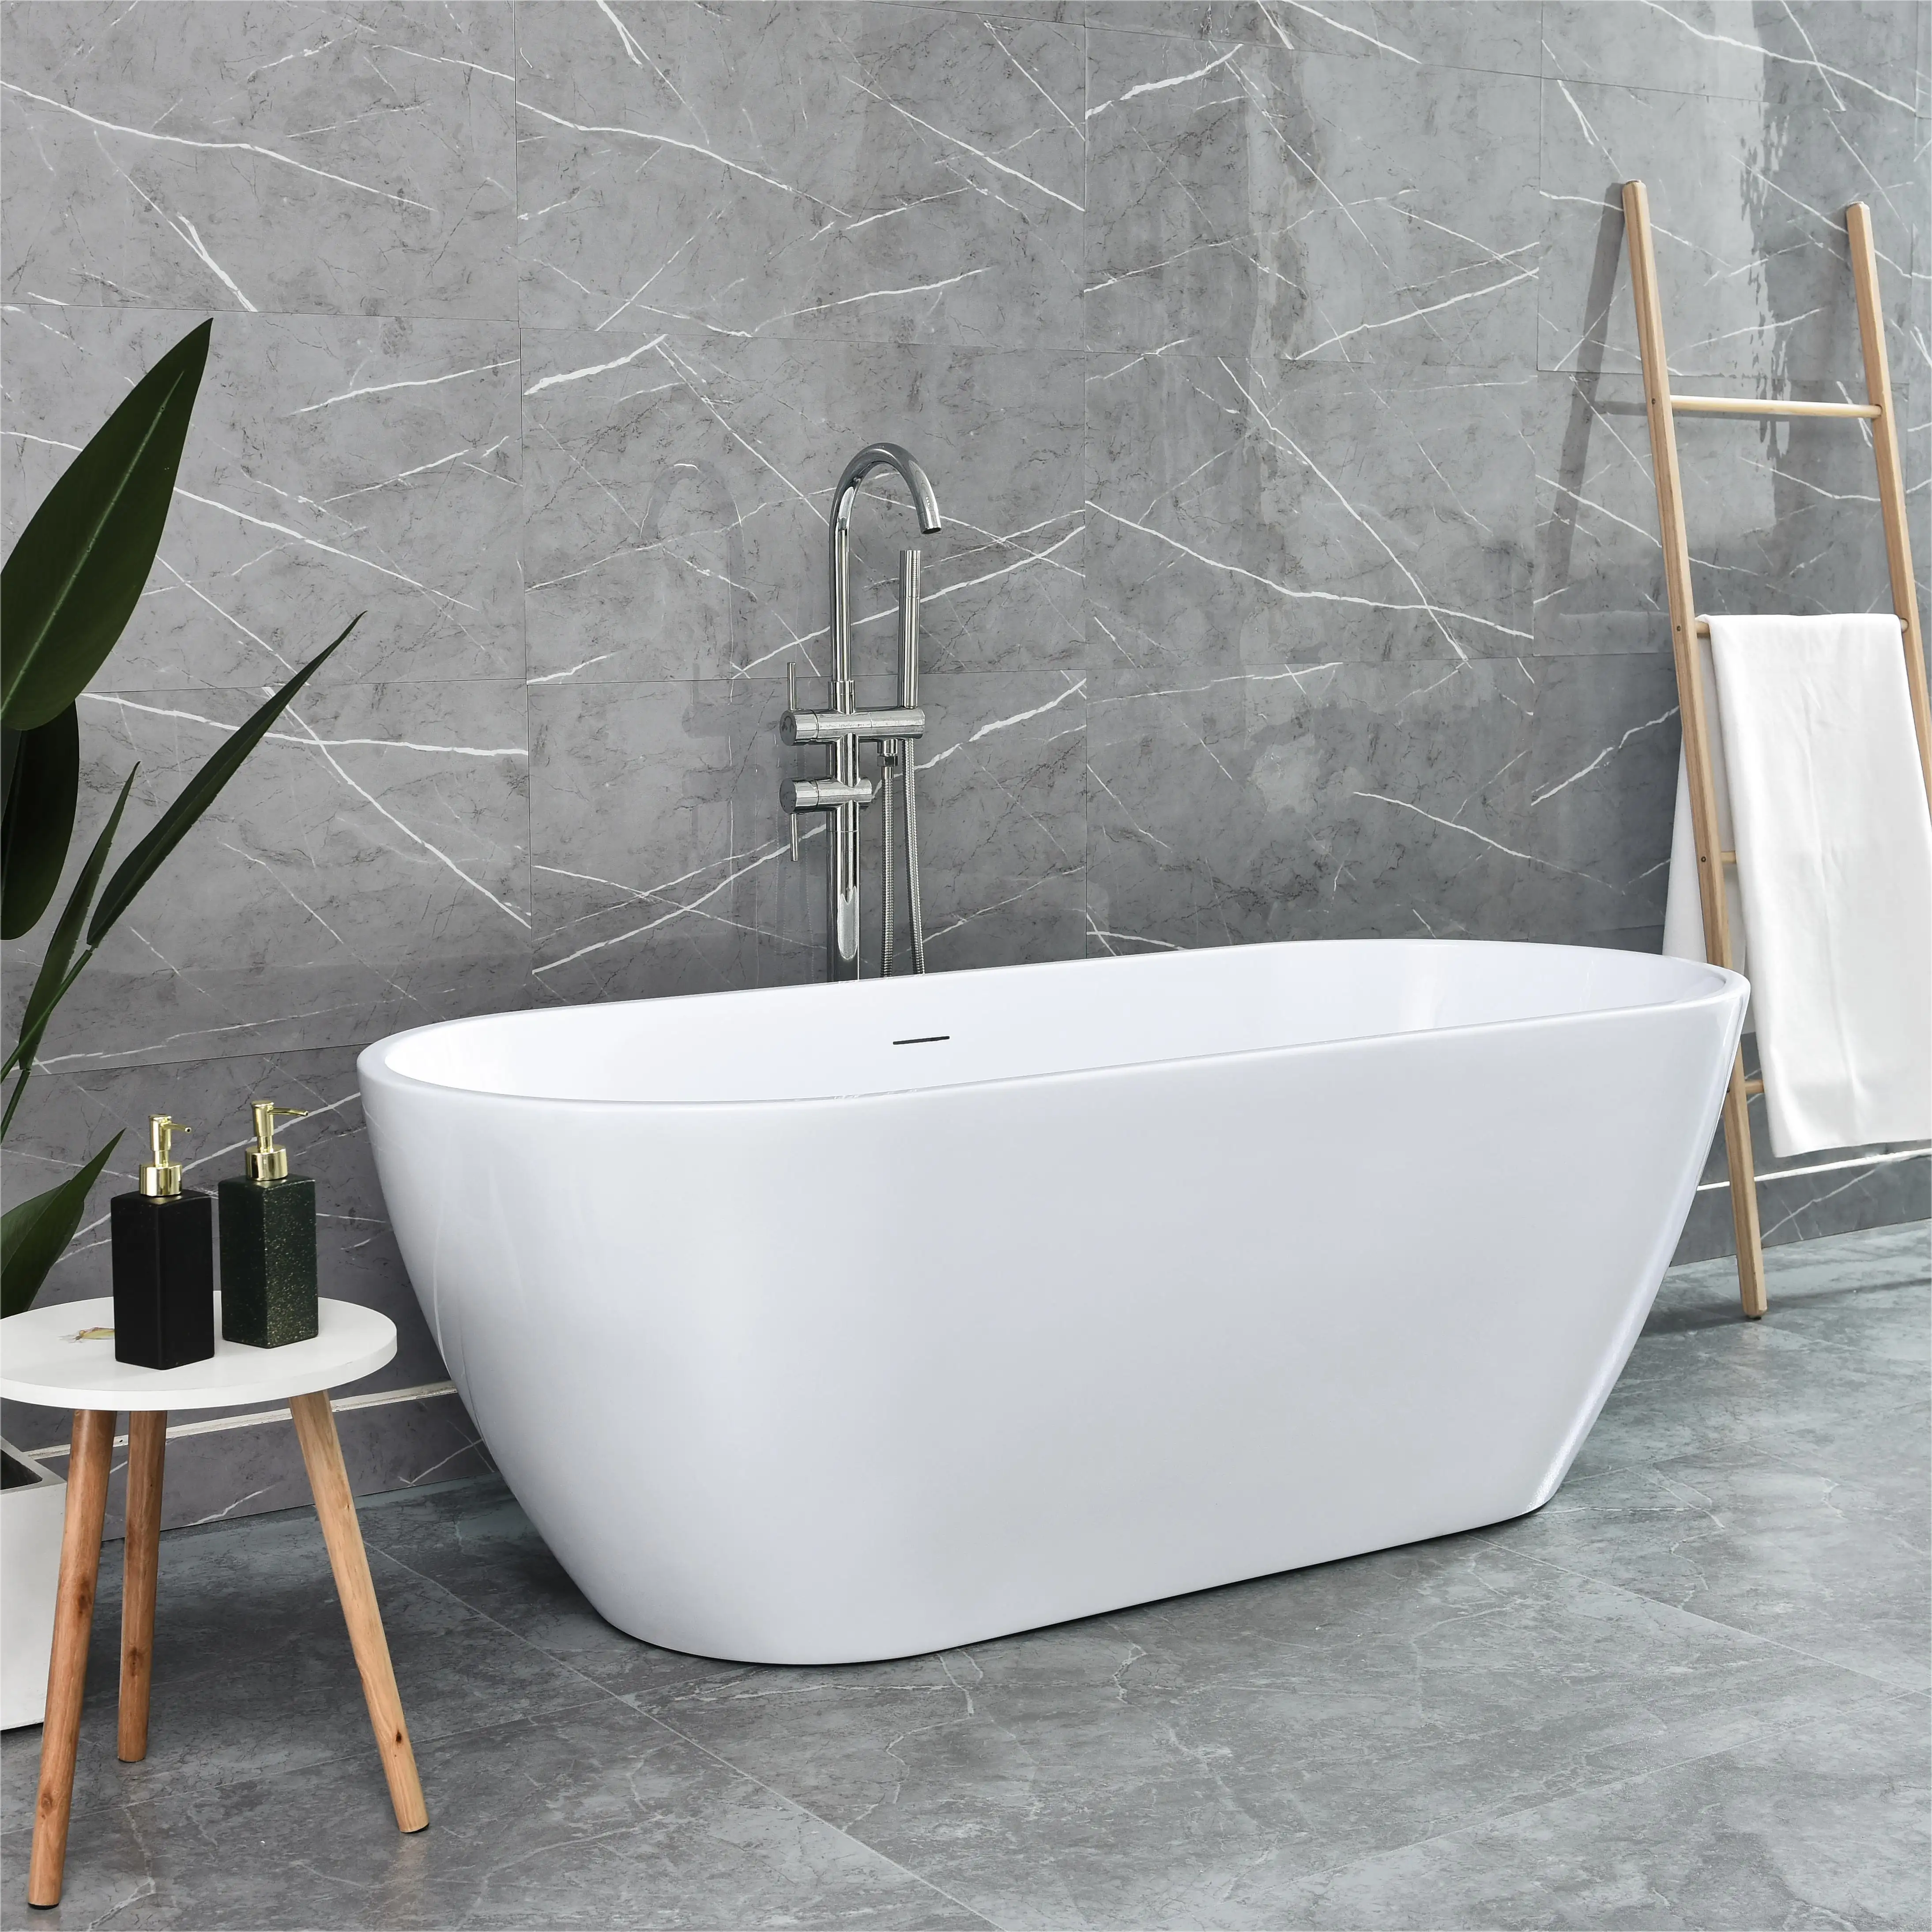 europäische acryl-badewanne weiß freistehend oval moderne acryl-badewanne freistehend pantoffeln badewanne einfaches design badewanne